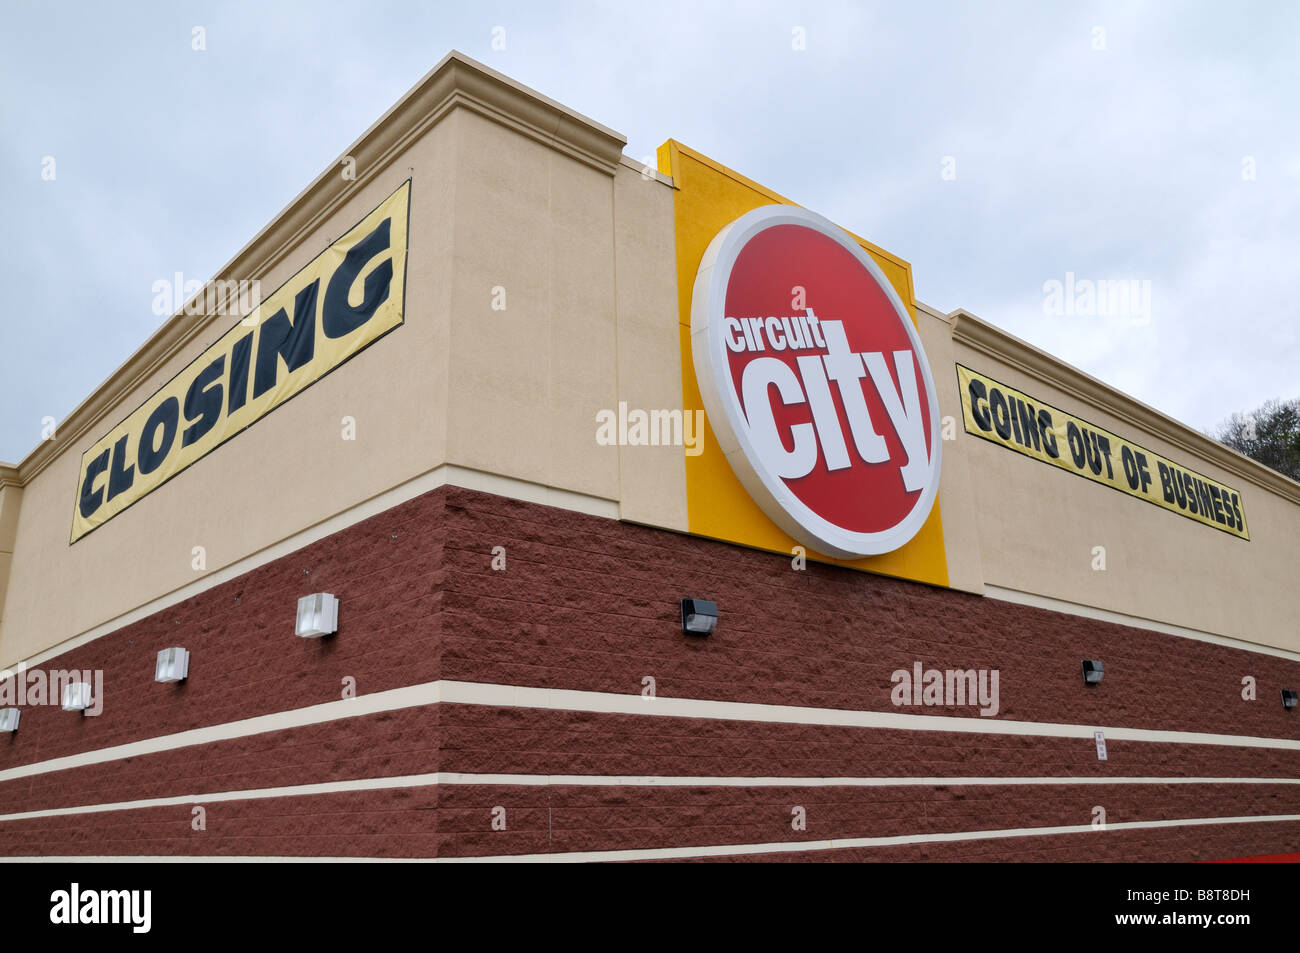 Circuit City, einem großen Elektronik-Store-Kette in den USA ging aus dem Geschäft nach 60 Jahren.  Foto von Darrell Young. Stockfoto